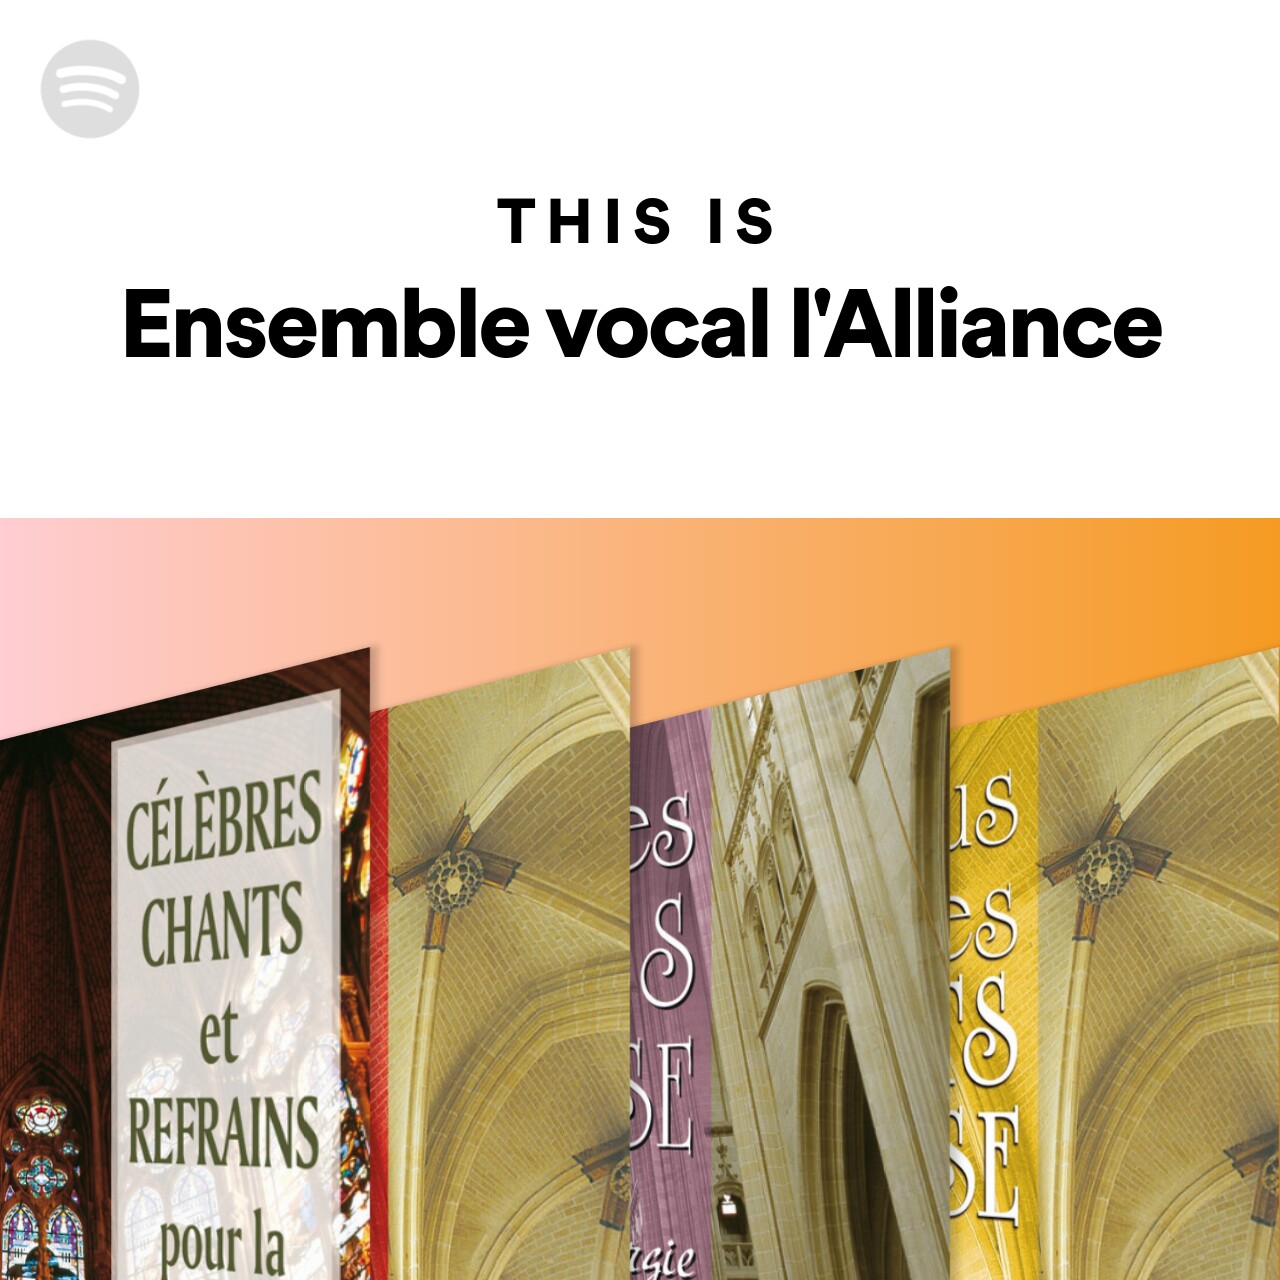 This Is Ensemble vocal l'Alliance